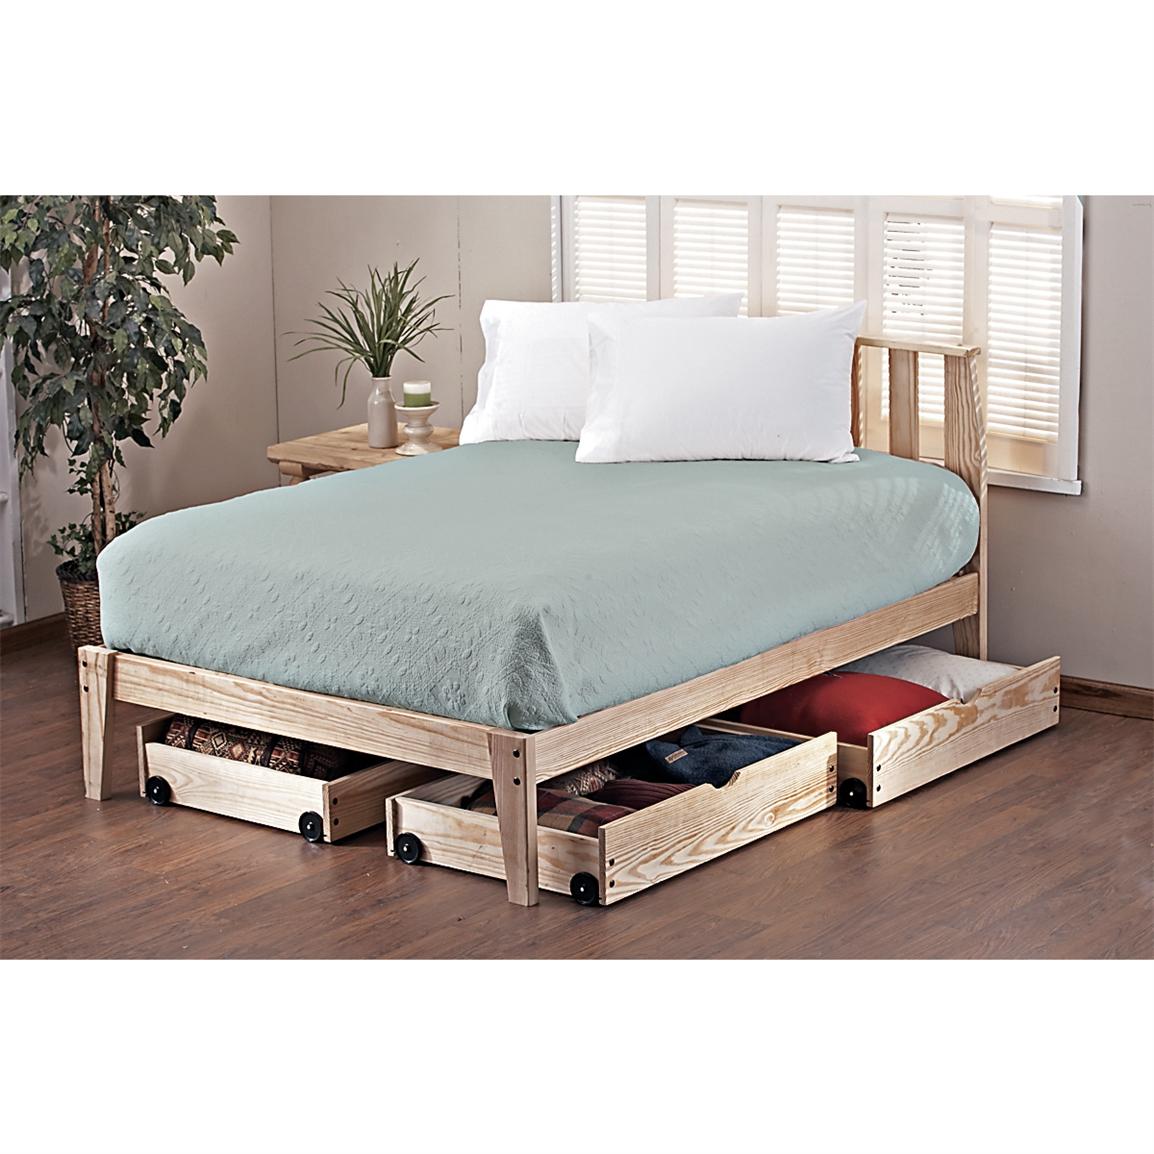 Pine Rock Platform Twin Bed Frame - 113111, Bedroom Sets 